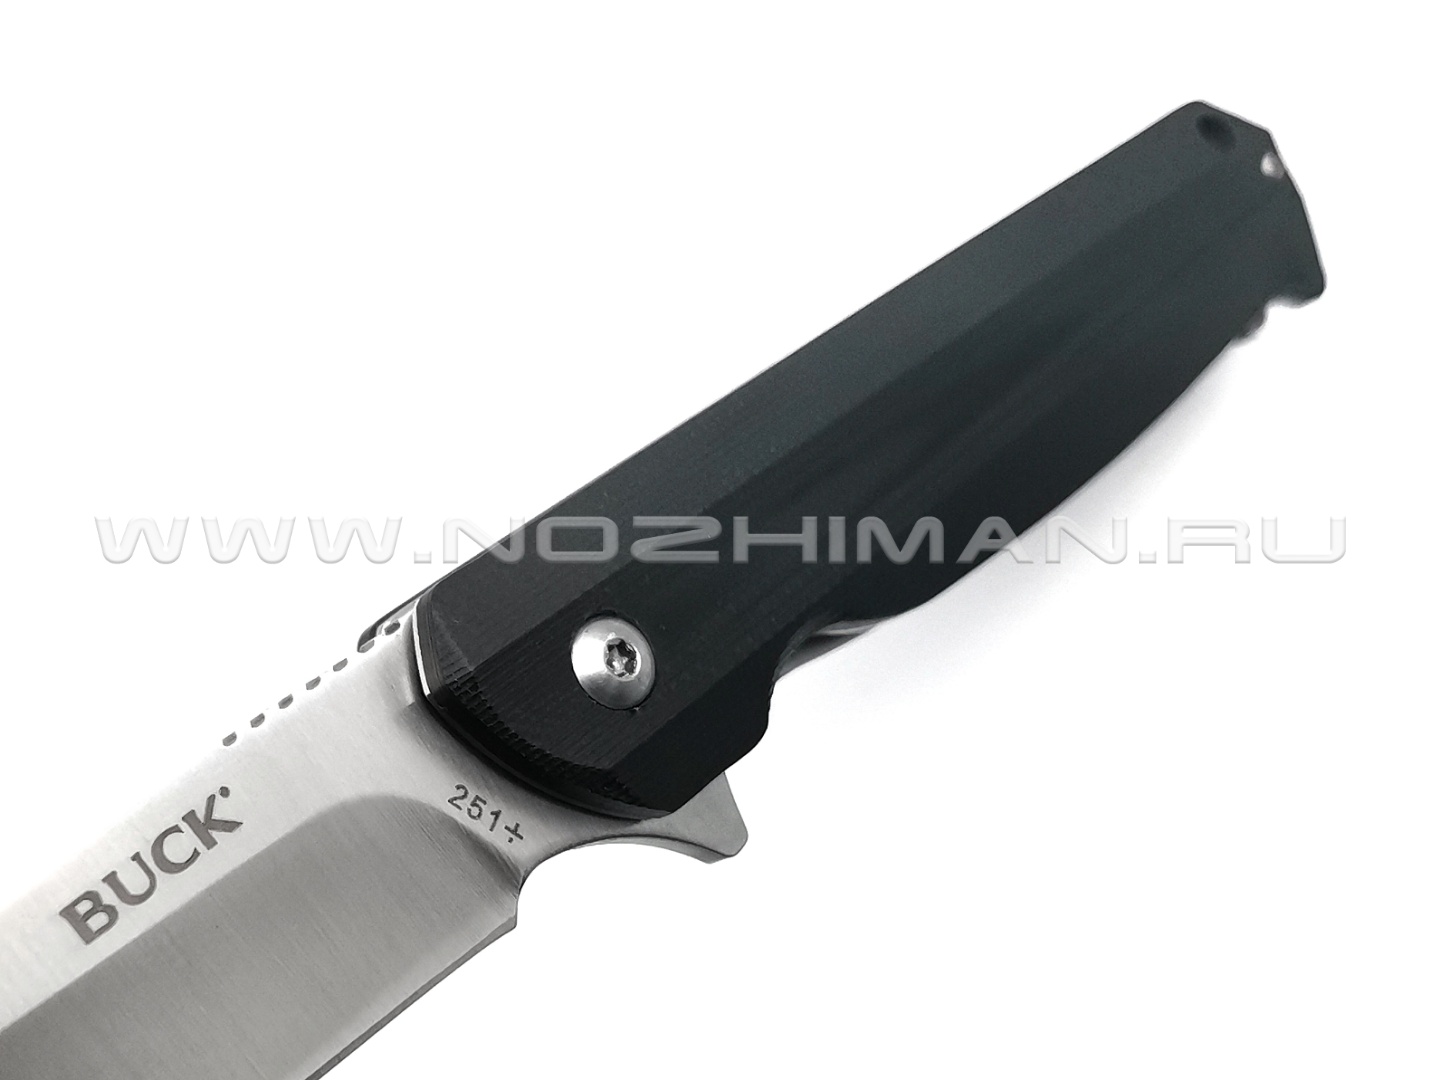 Нож Buck Langford 251 0251BKS сталь 7Cr17MoV, рукоять G10 black